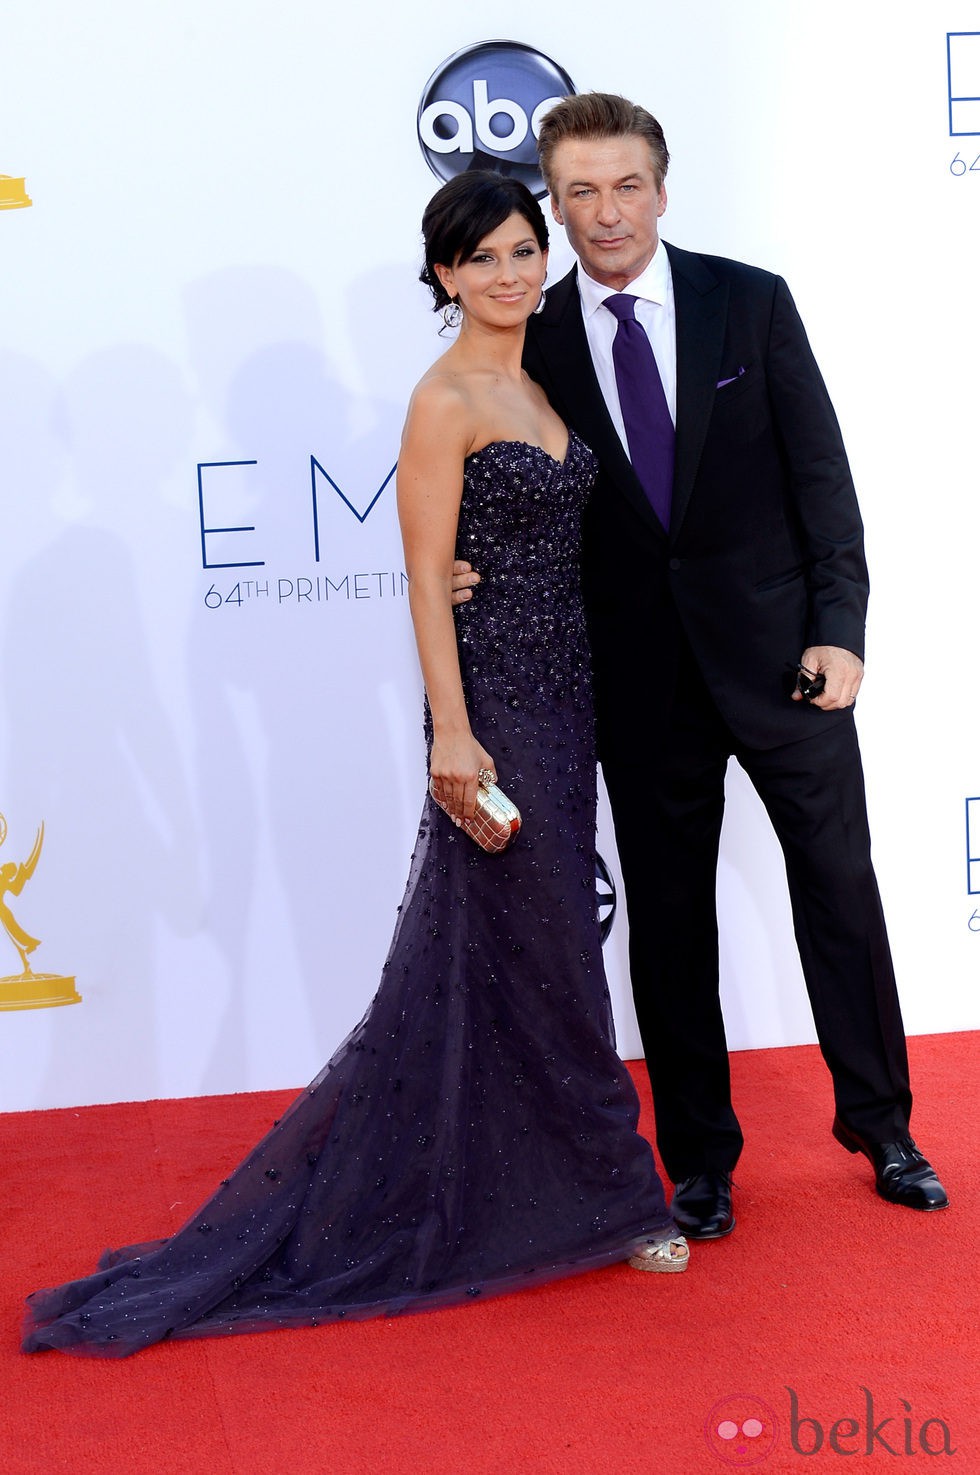 Alec Baldwin e Hilaria Thomas en los Emmy 2012